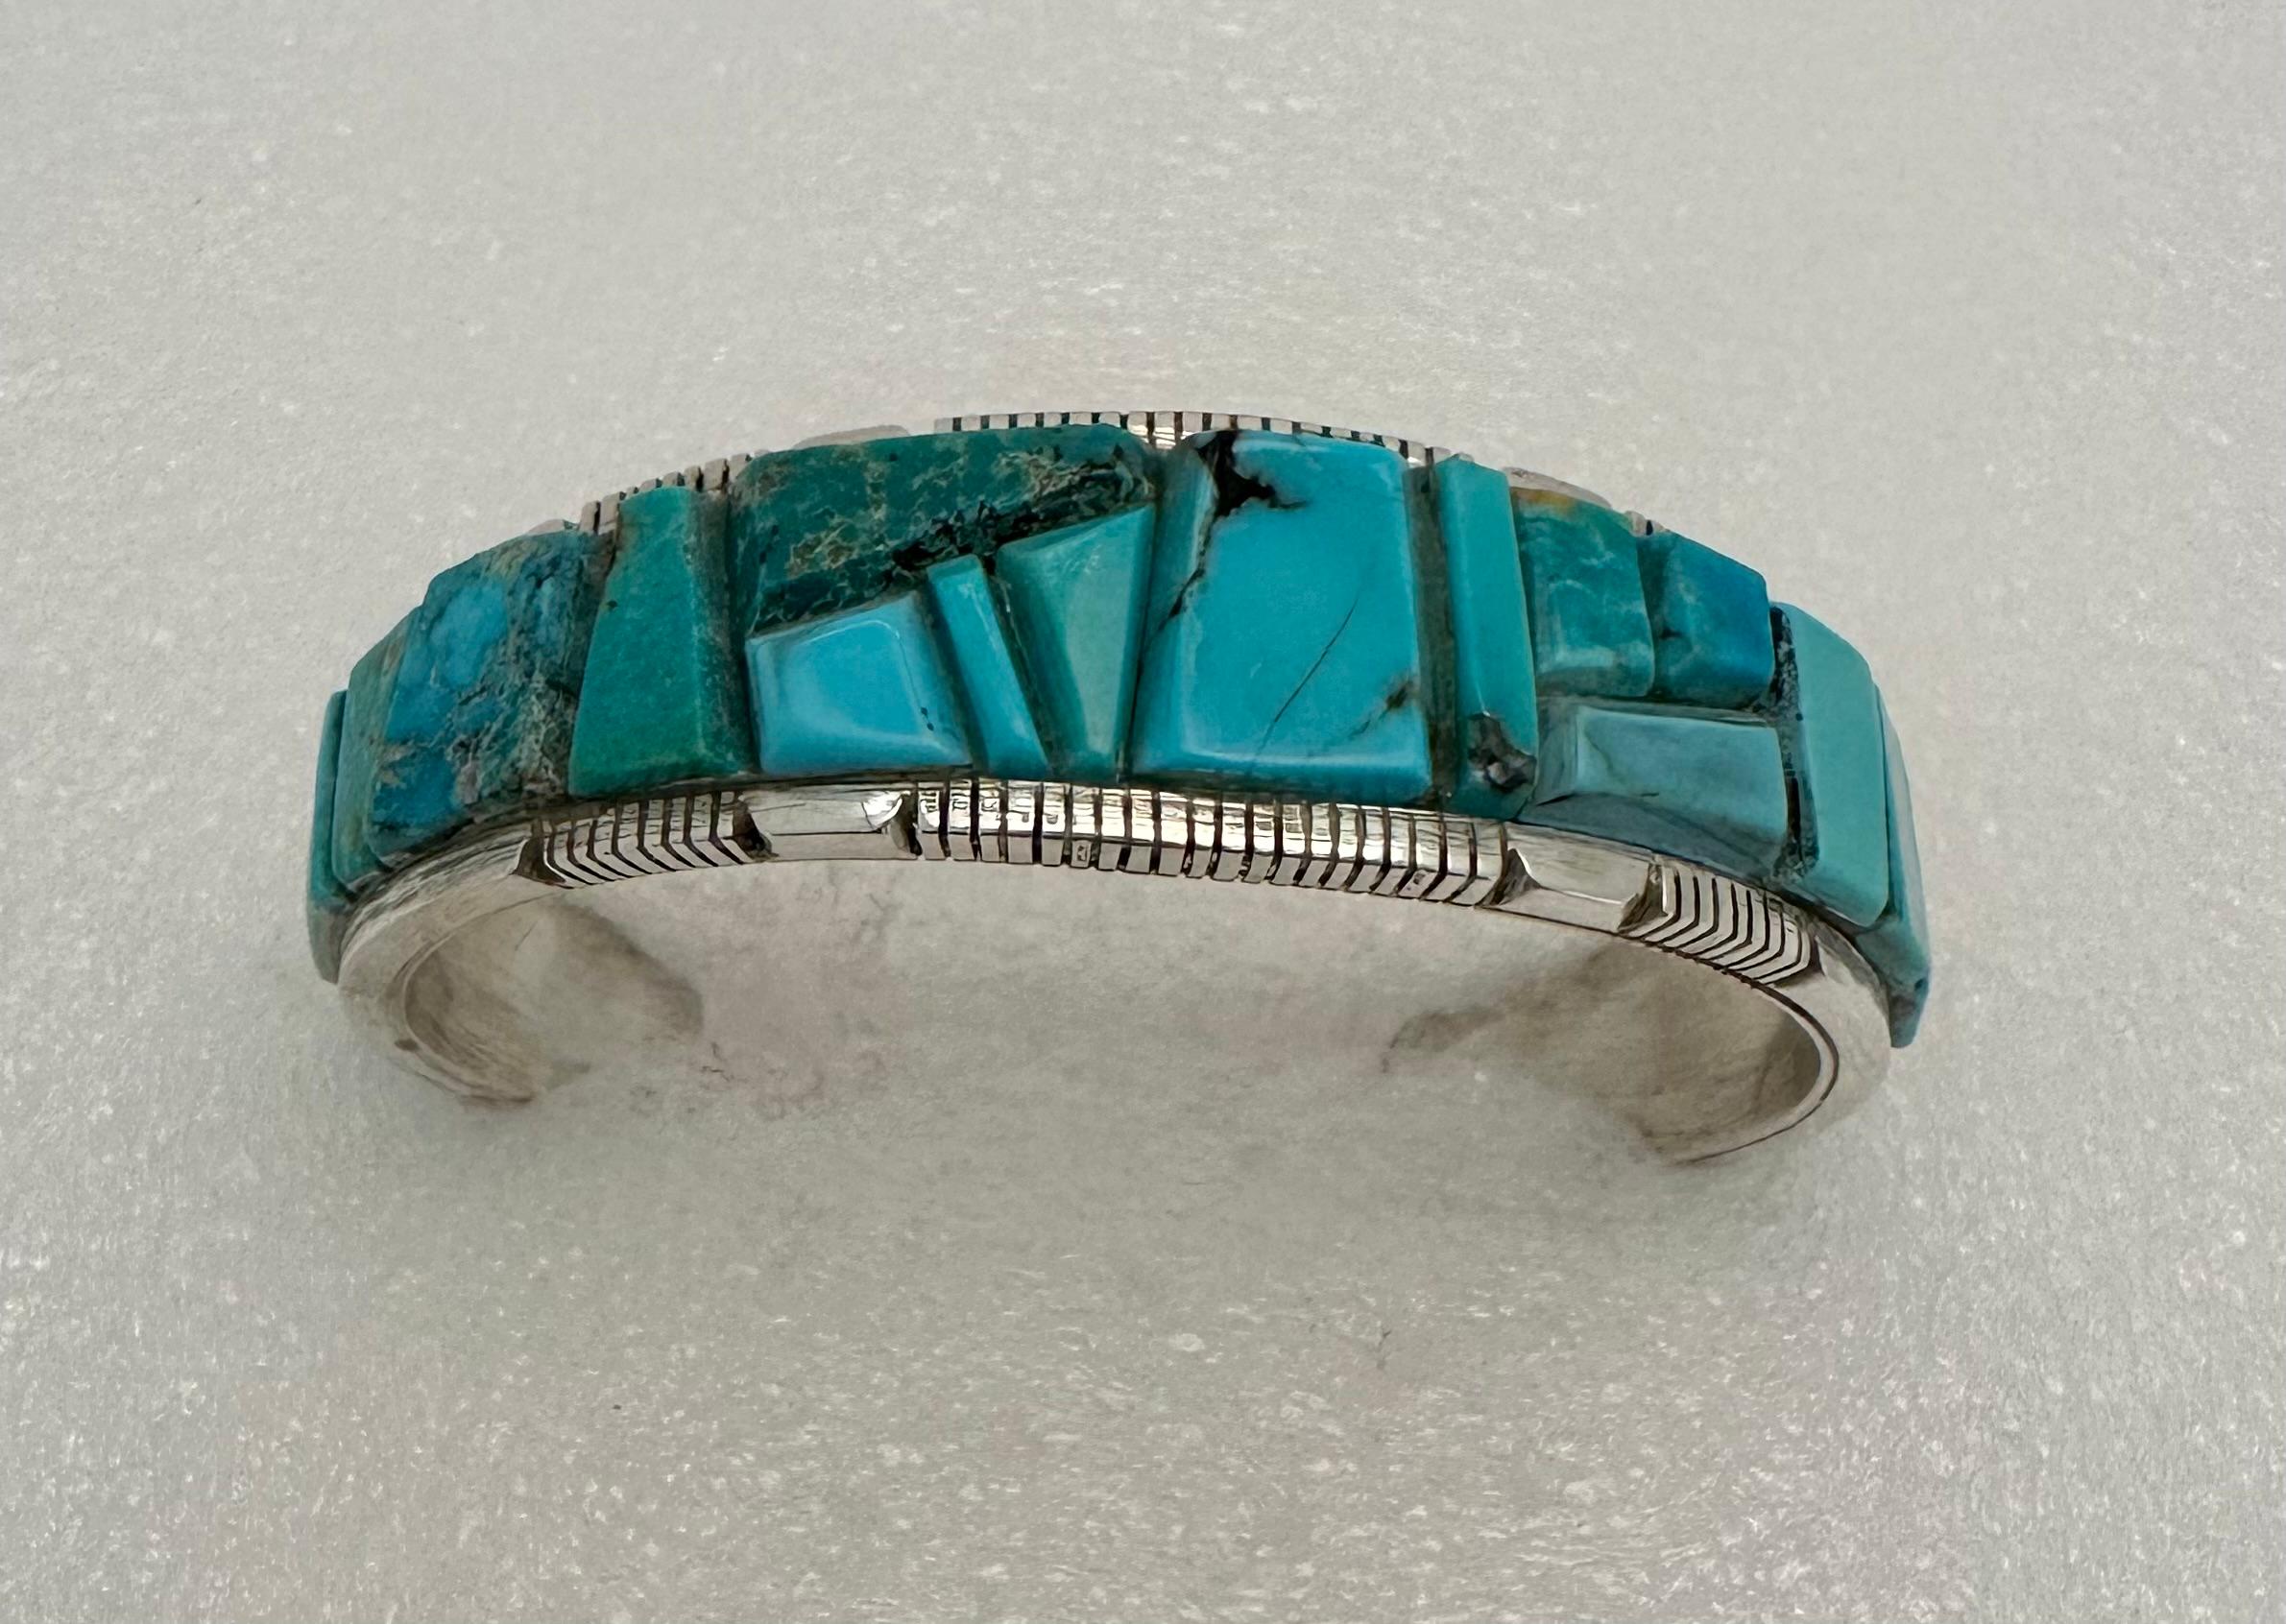 Sterling Silver Kingman Turquoise Cuff Bracelet by Navajo Artist Steve Francisco

3/4